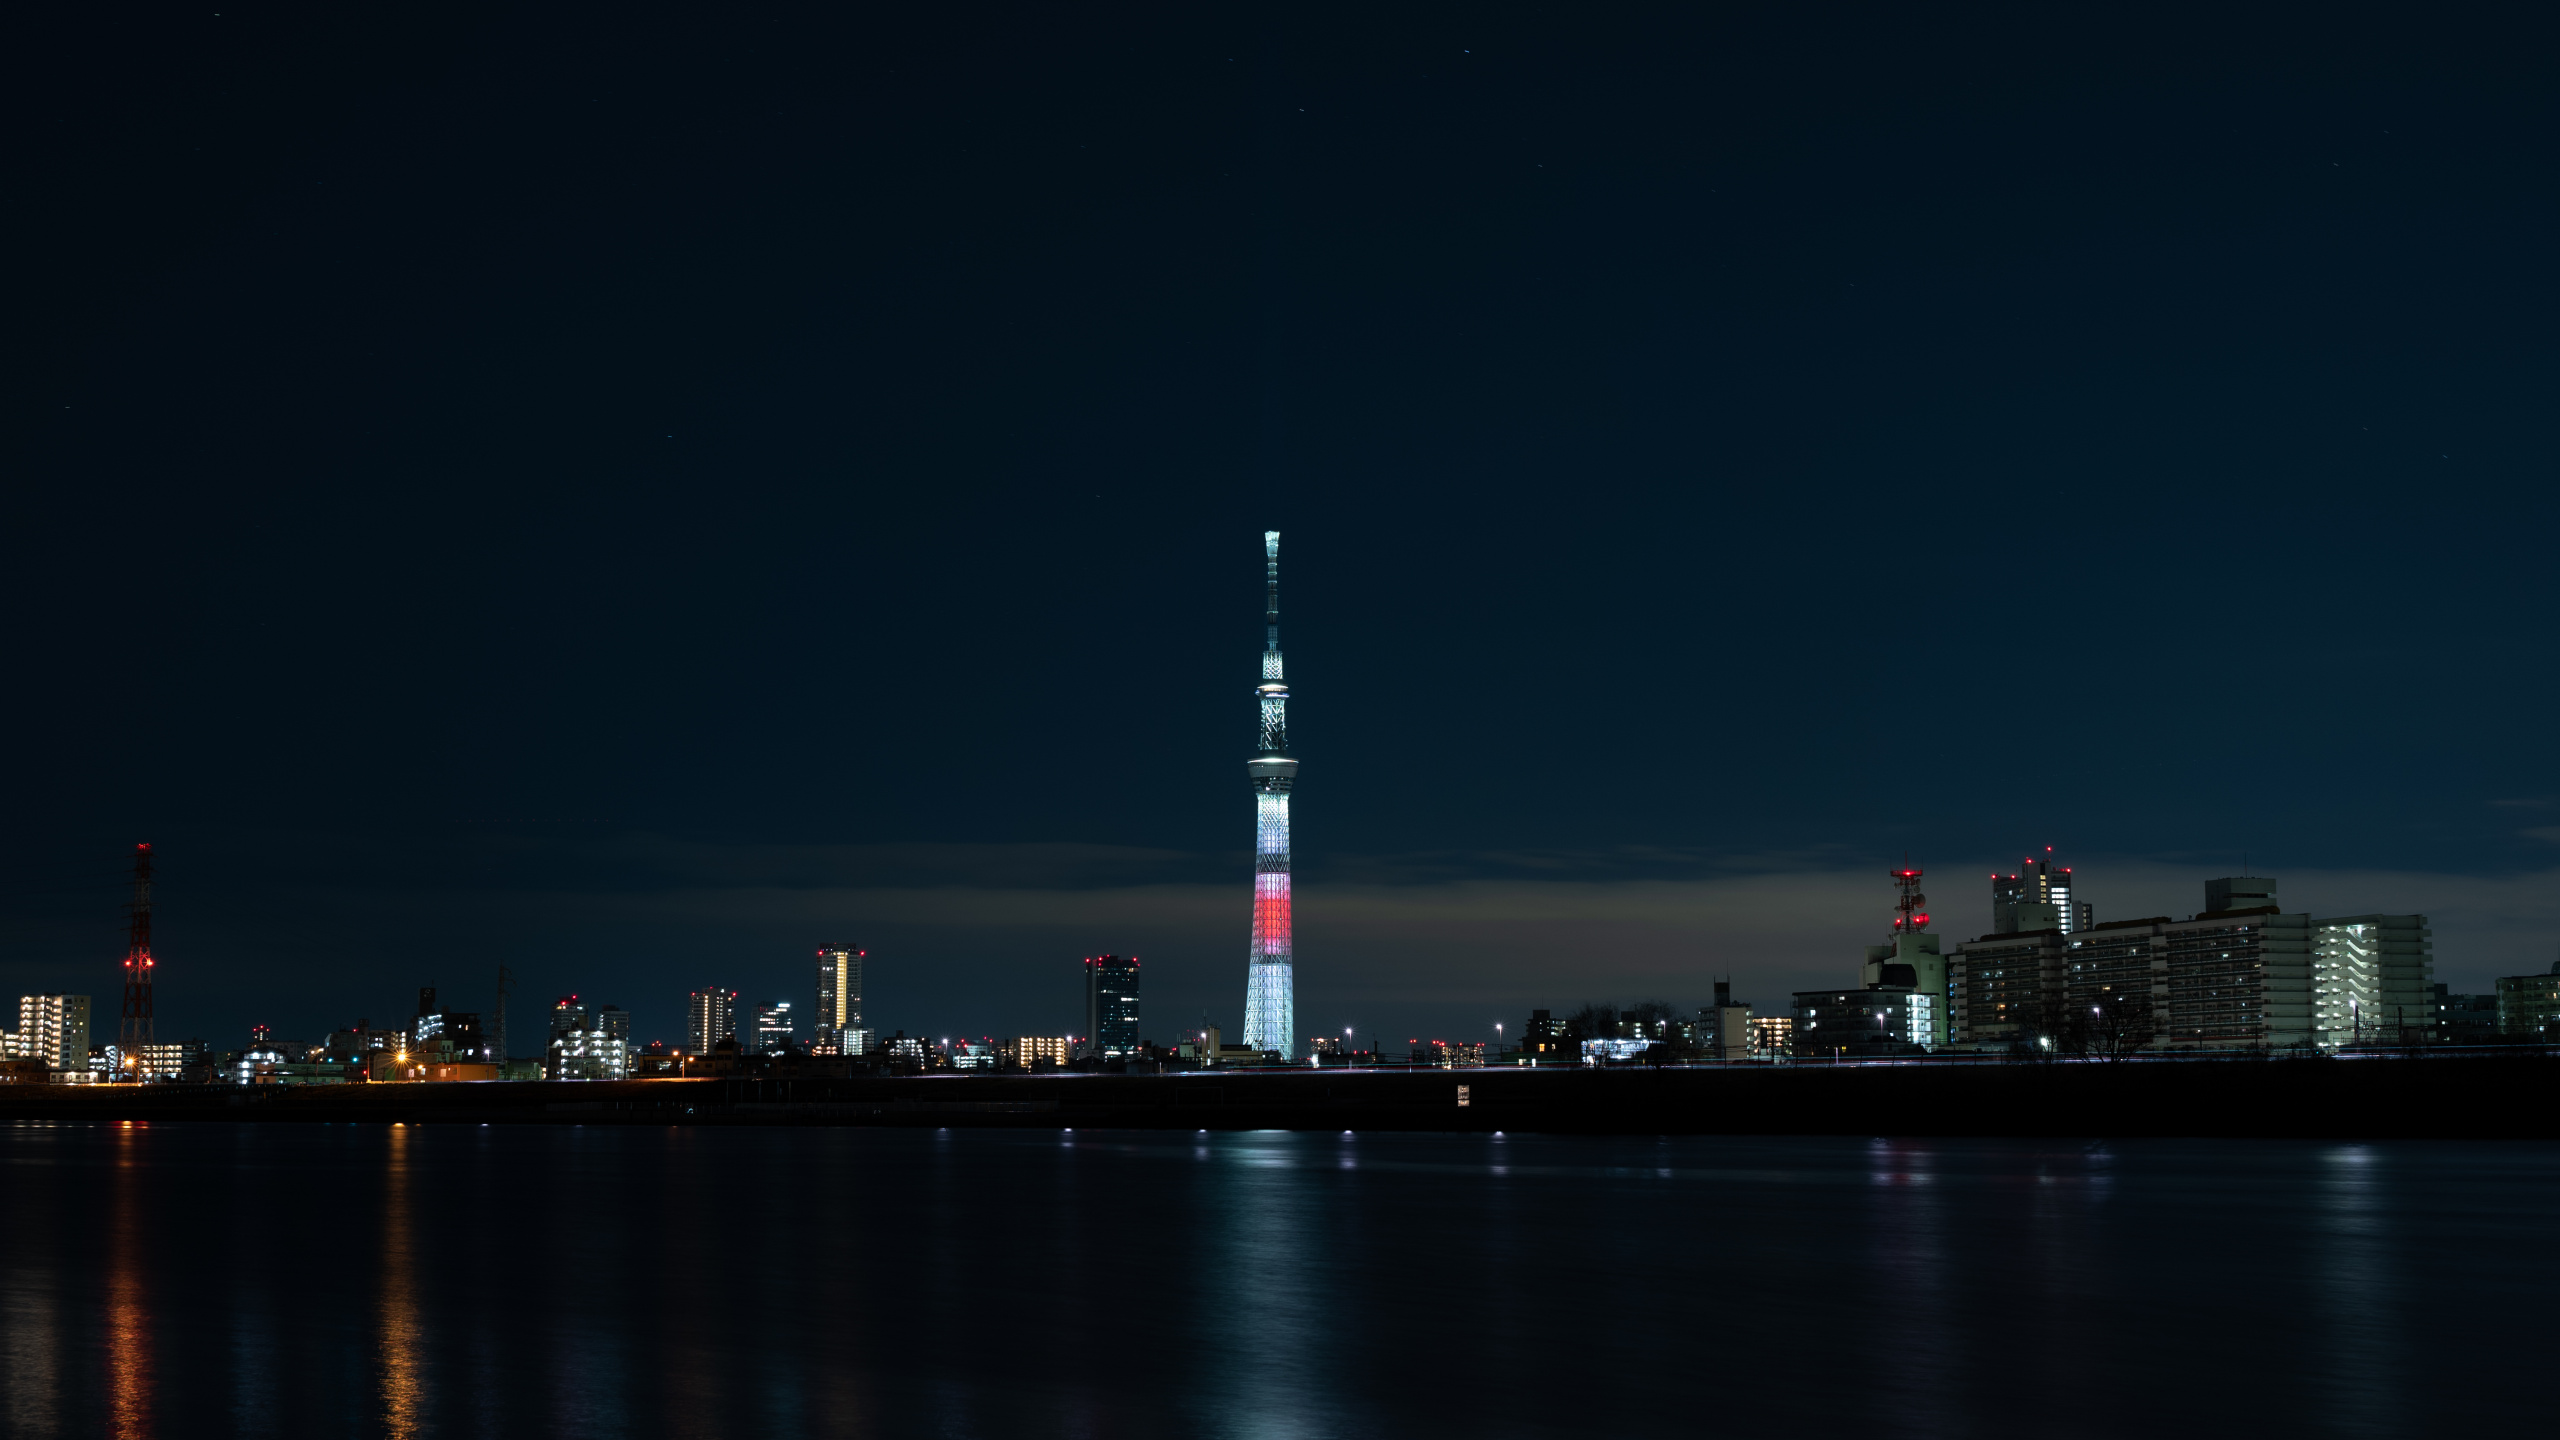 Weißer Und Roter Turm in Der Nähe Eines Gewässers Während Der Nacht. Wallpaper in 2560x1440 Resolution